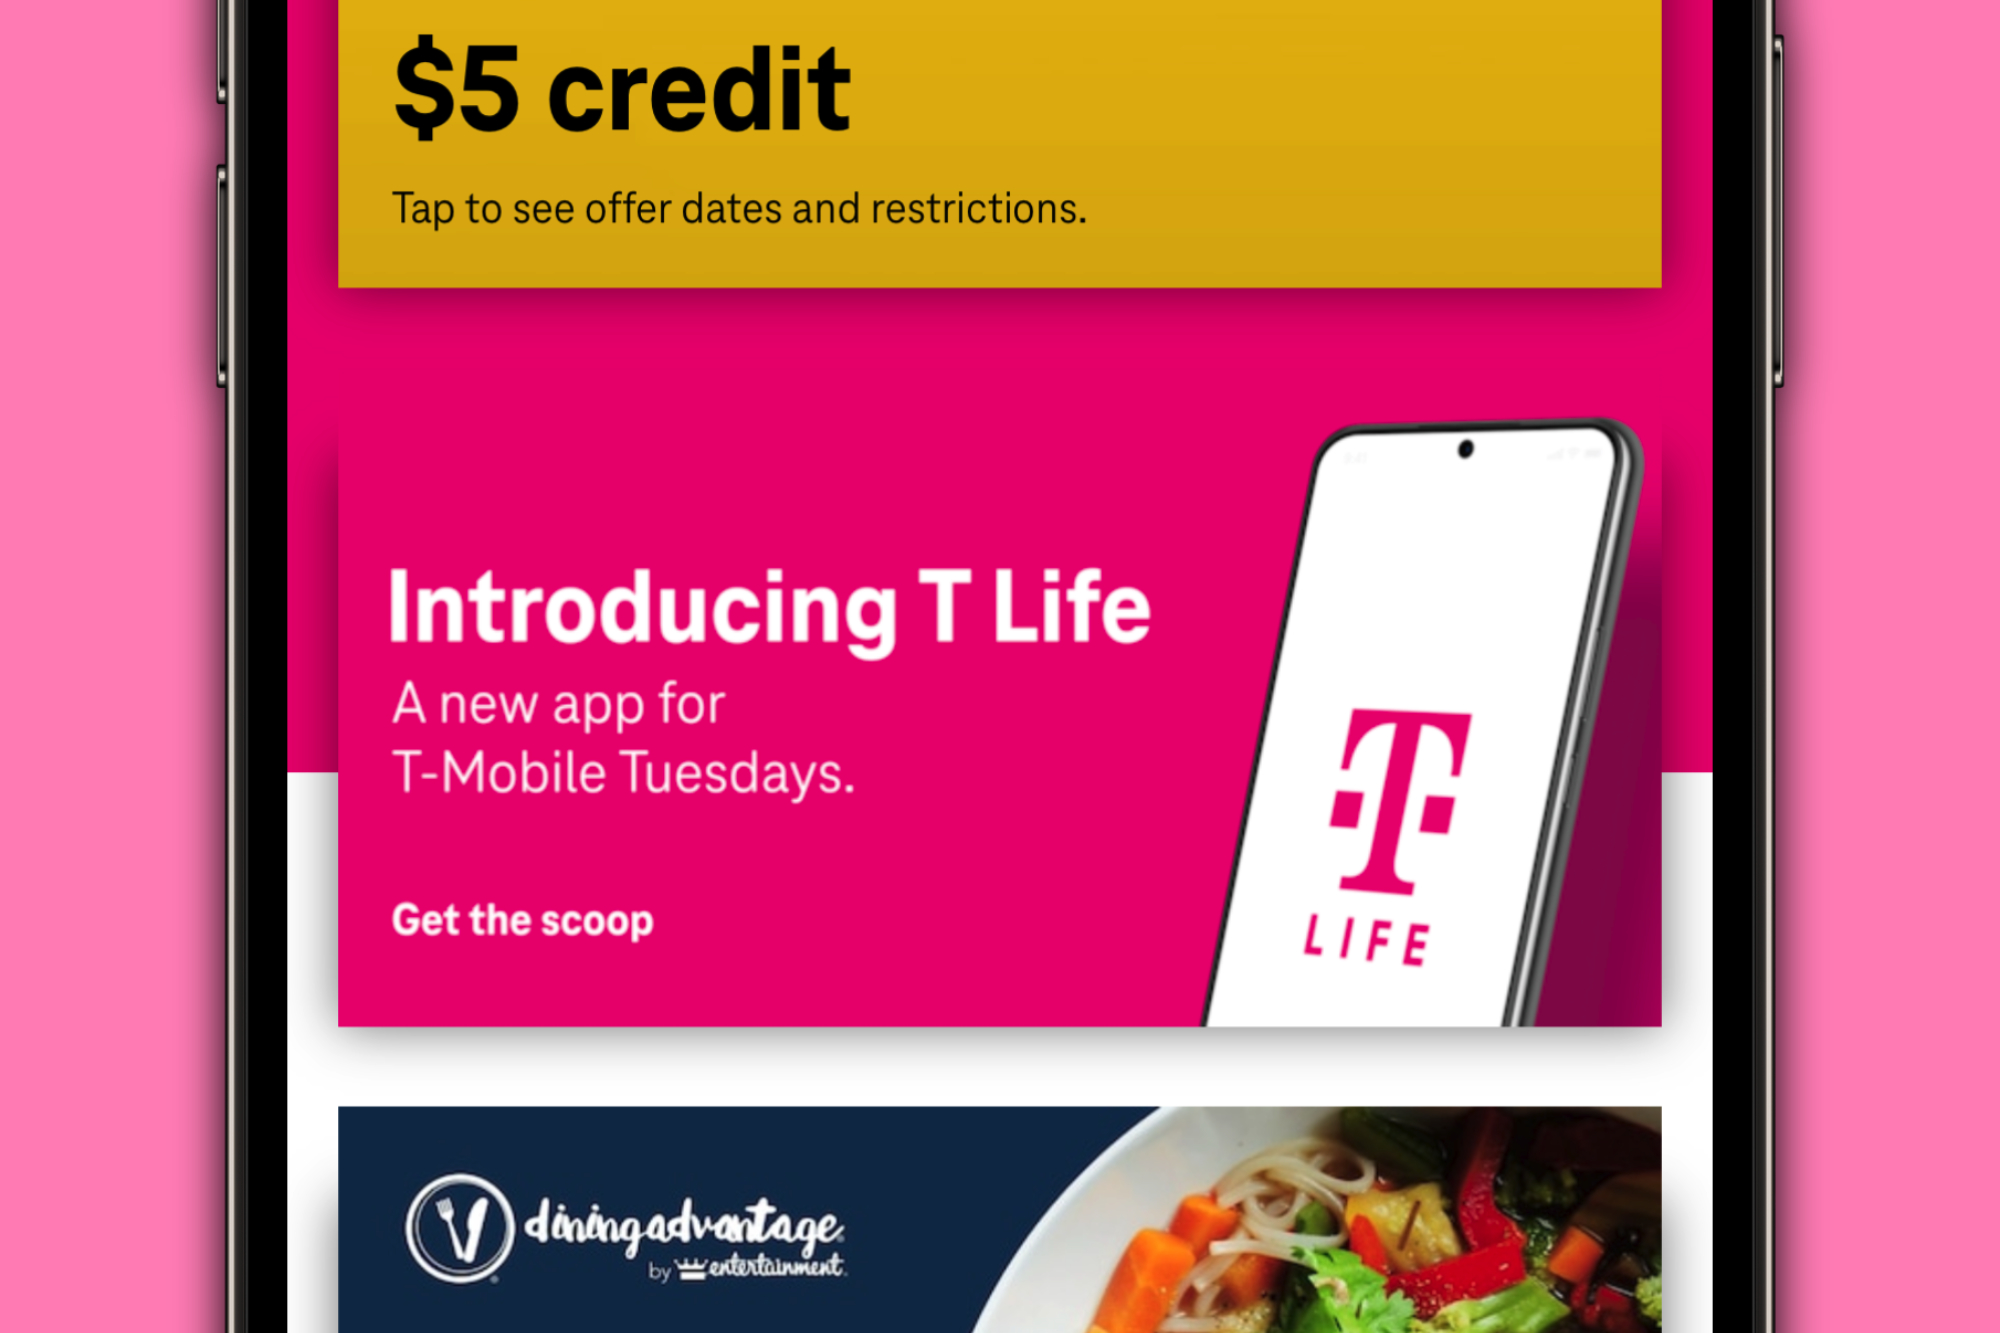 تصویری از برنامه سه شنبه های T-Mobile که تبلیغاتی را برای برنامه جدید T Life نشان می دهد.